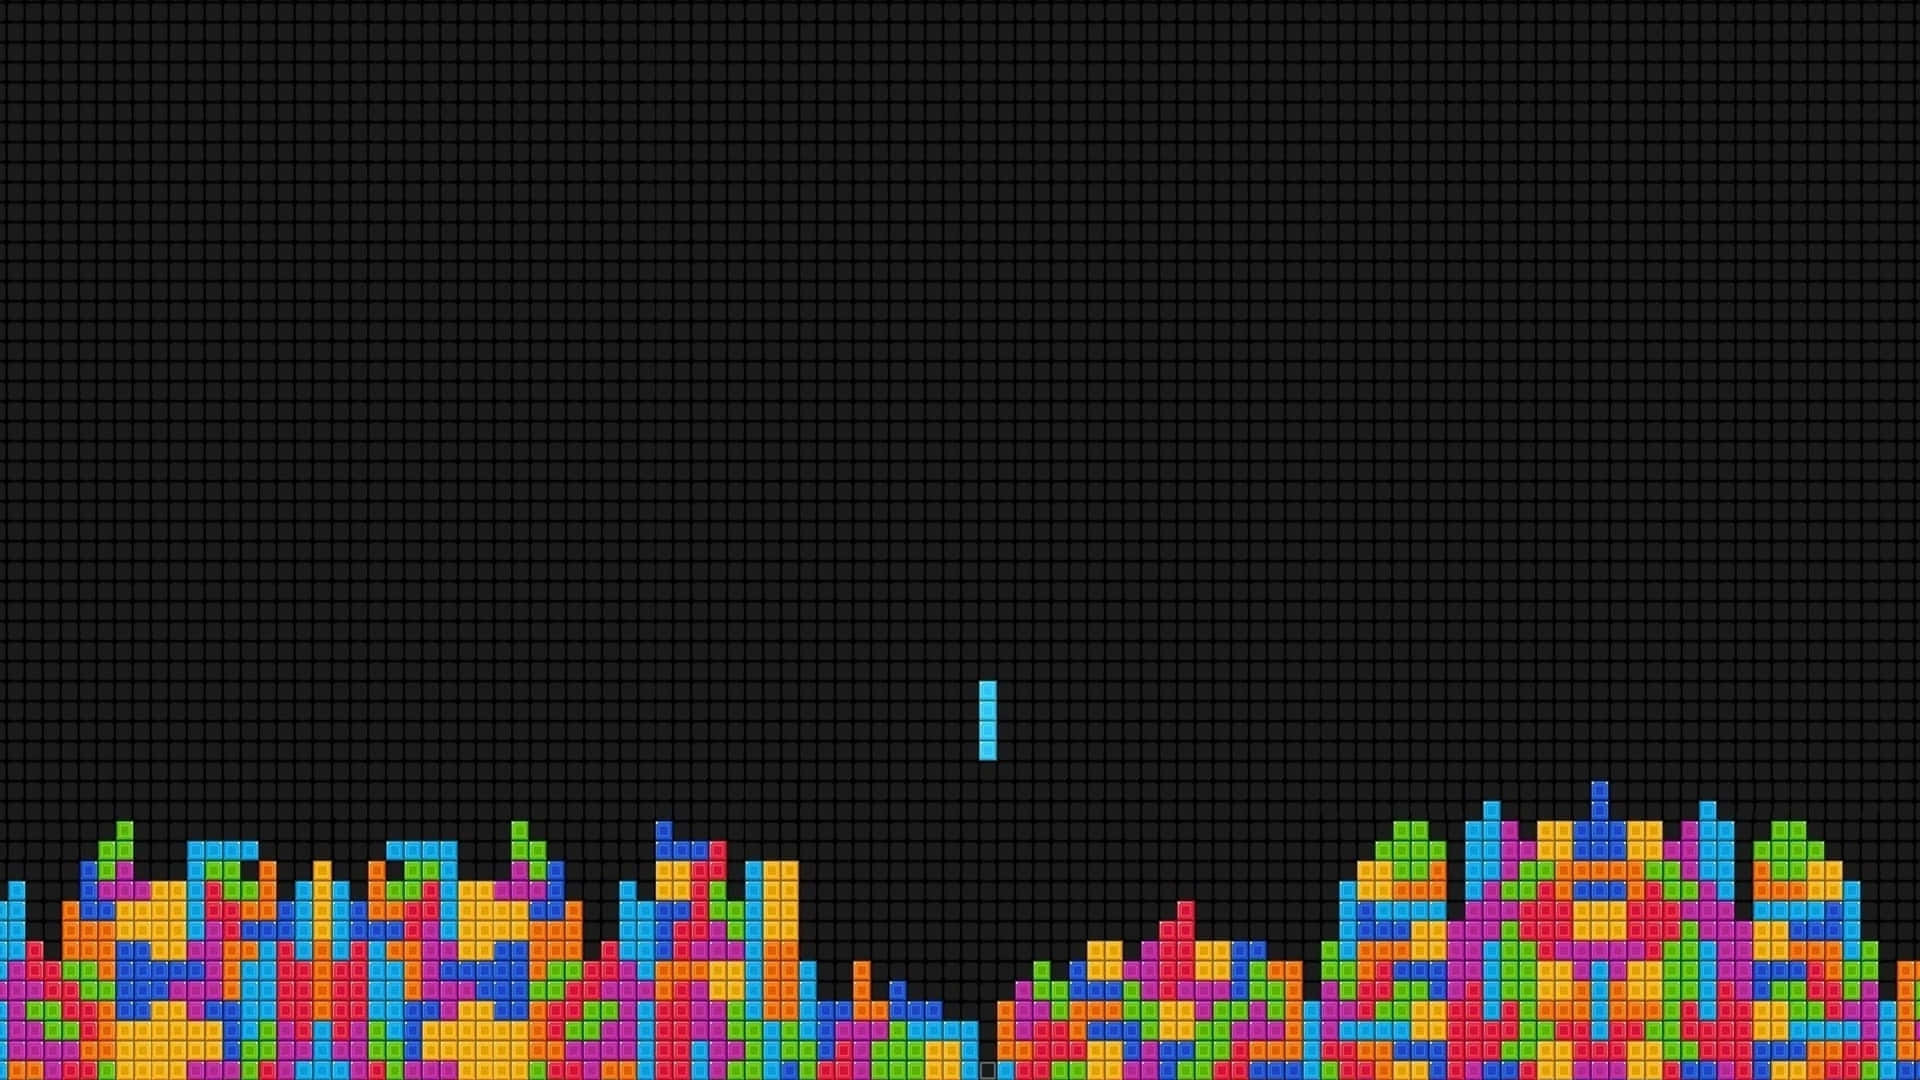 Fondode Pantalla De Bloques De Tetris En Zoom Para Videojuegos.